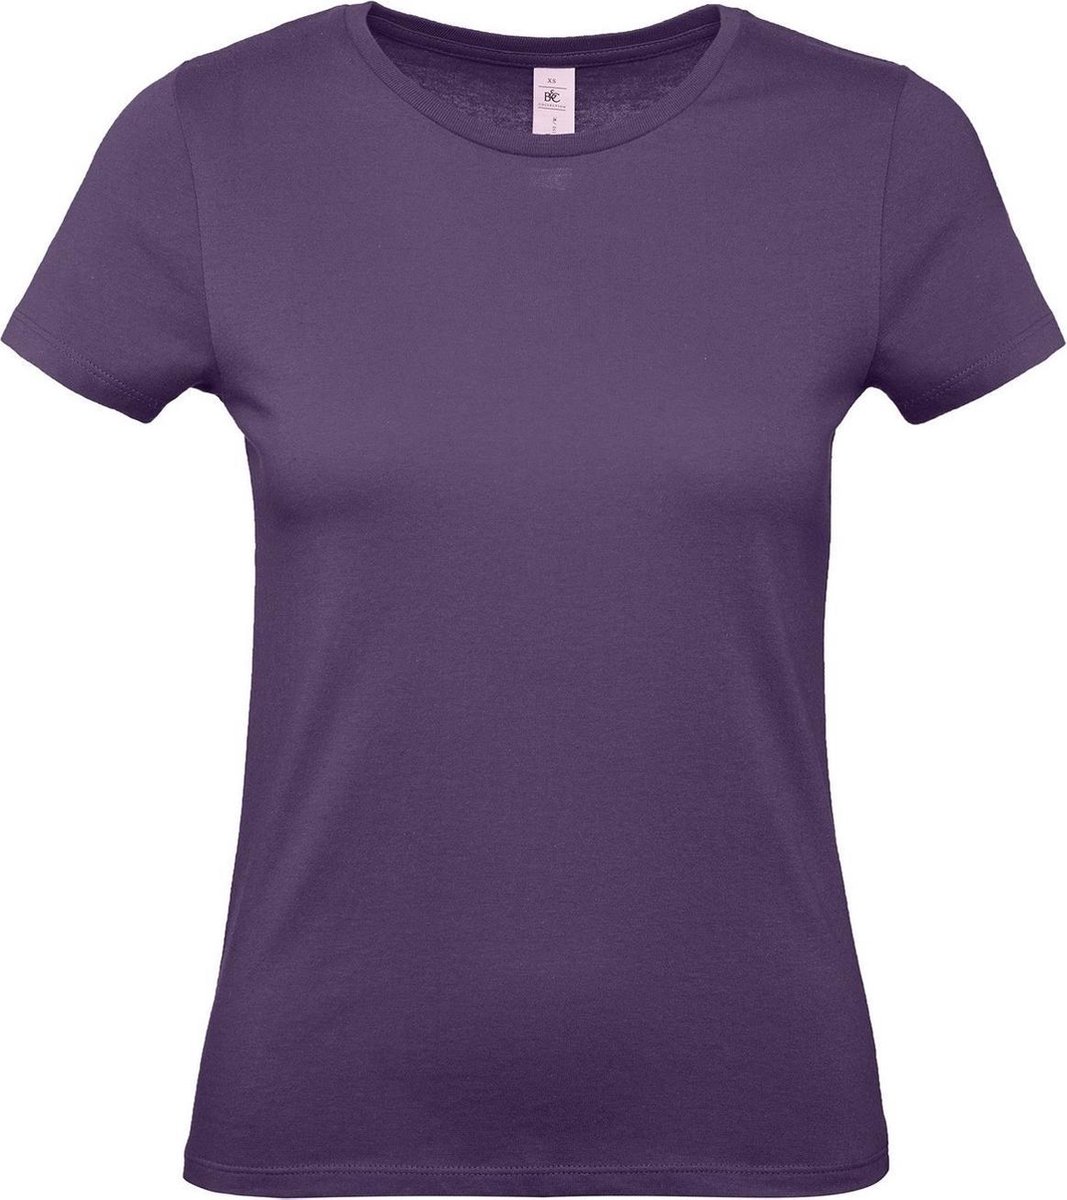 Set van 2x stuks paars basic t-shirts met ronde hals voor dames - katoen - 145 grams - paarse shirts / kleding, maat: XL (42)